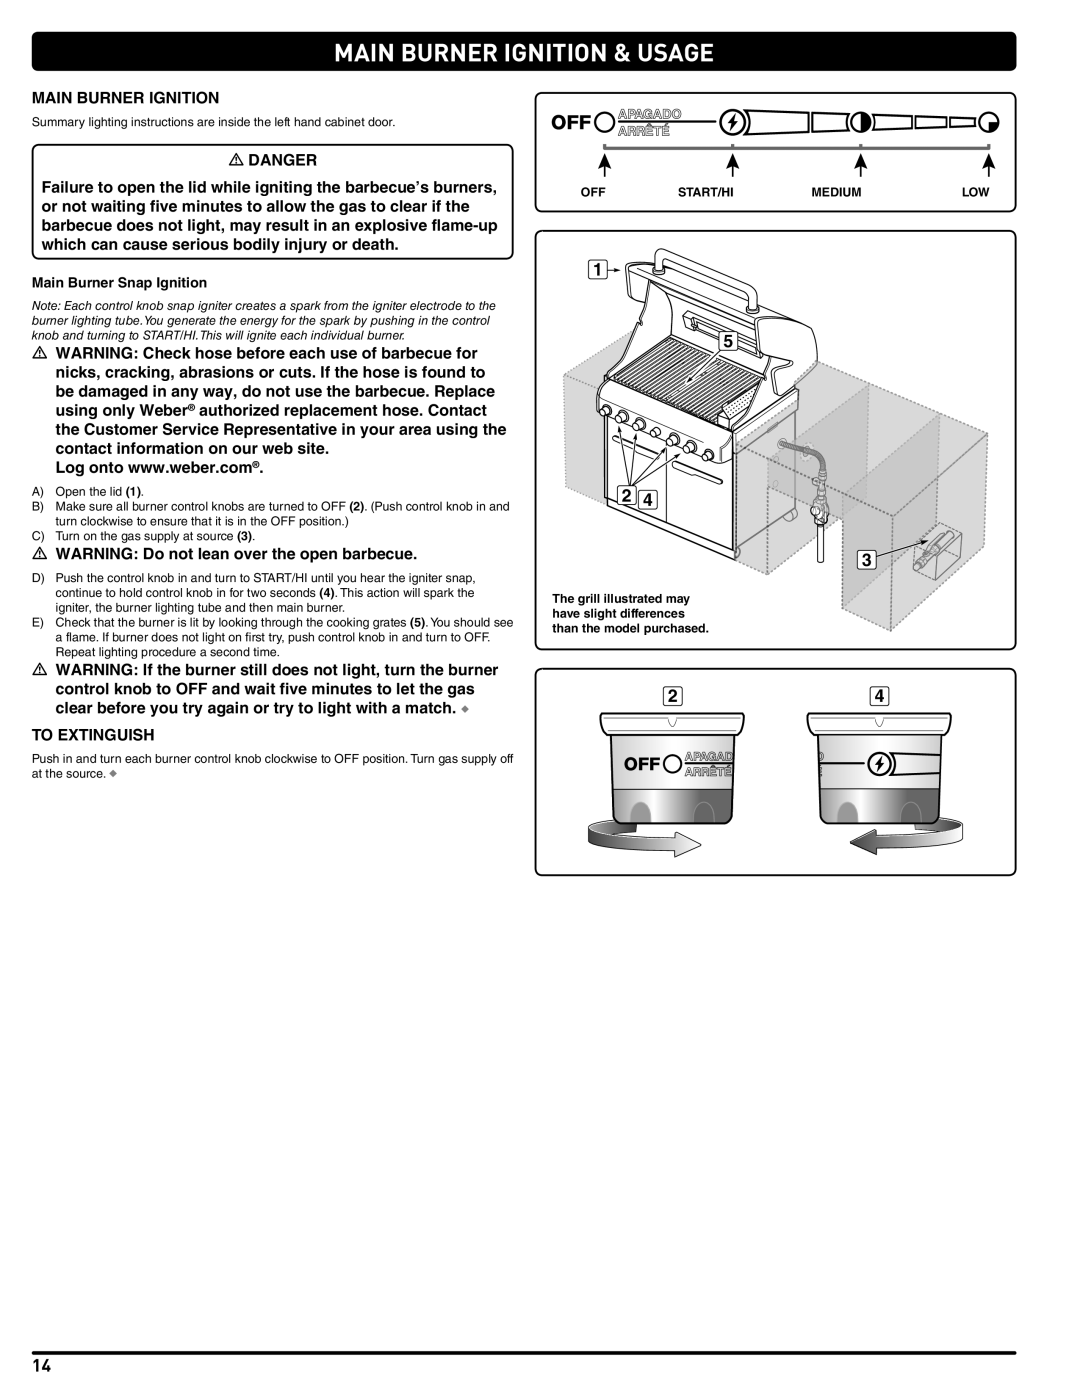 Weber 56576 manual Main Burner Ignition & Usage, Main Burner Snap Ignition 